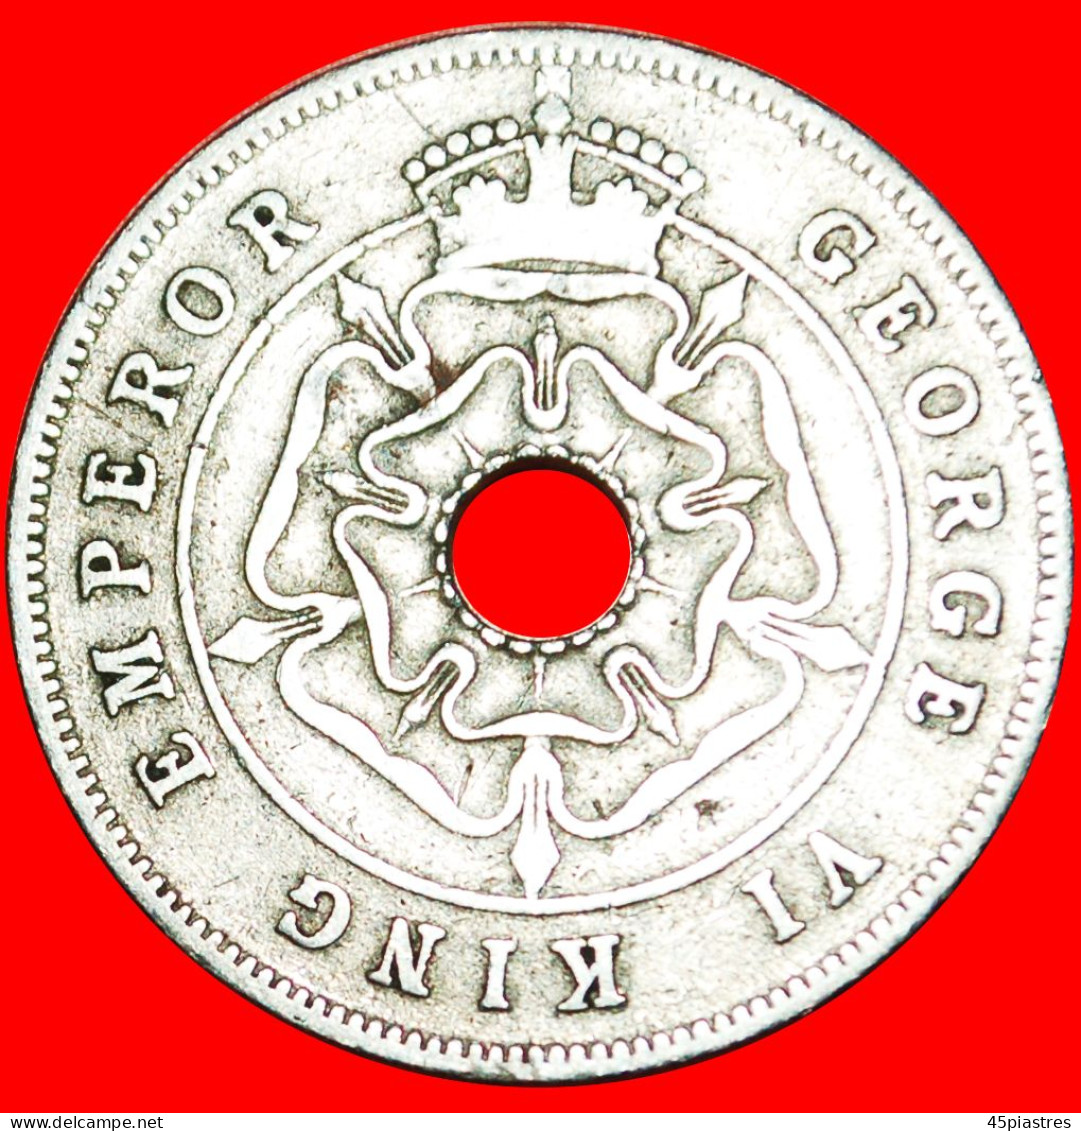 &#9733;CROWNED FLOWER: SOUTHERN RHODESIA &#9733; 1 PENNY 1939! LOW START&#9733;NO RESERVE! George VI (1937-1952) - Rhodésie